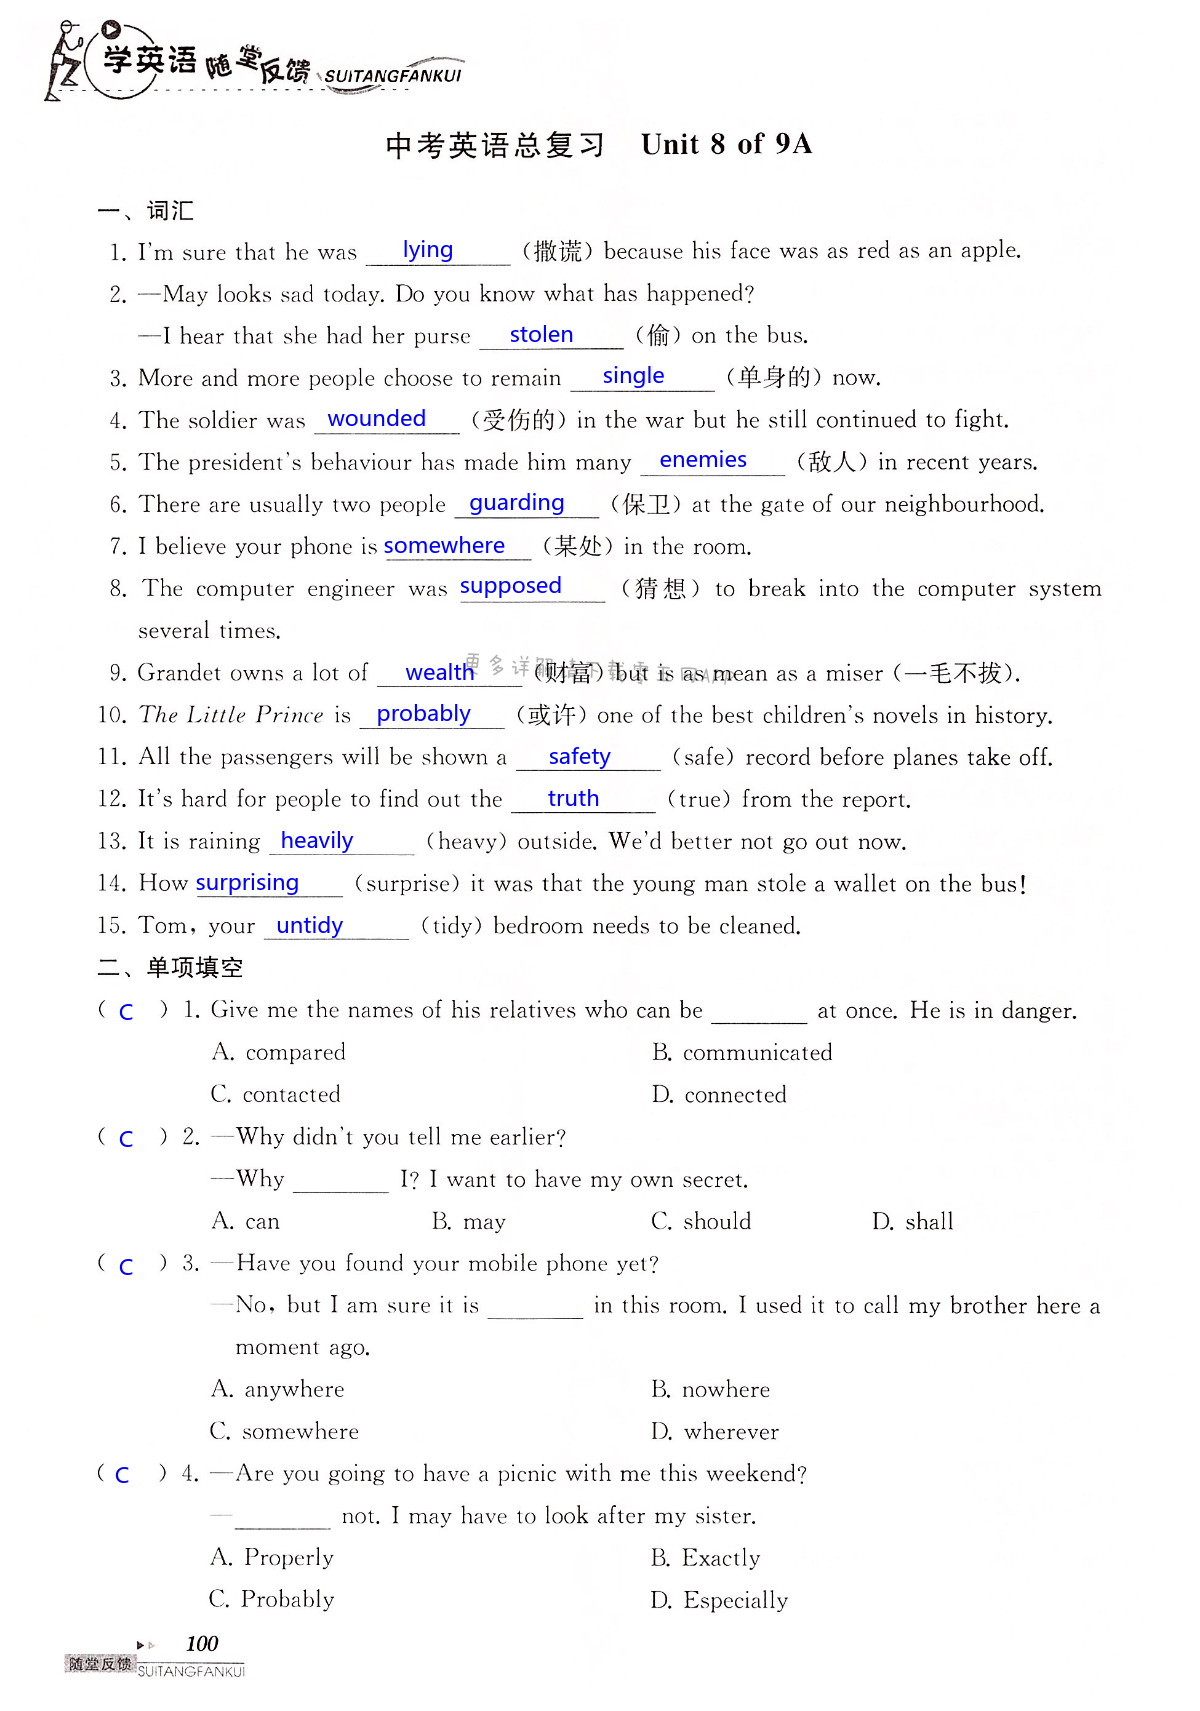 中考英语总复习 Unit 8 of 9A - 第100页